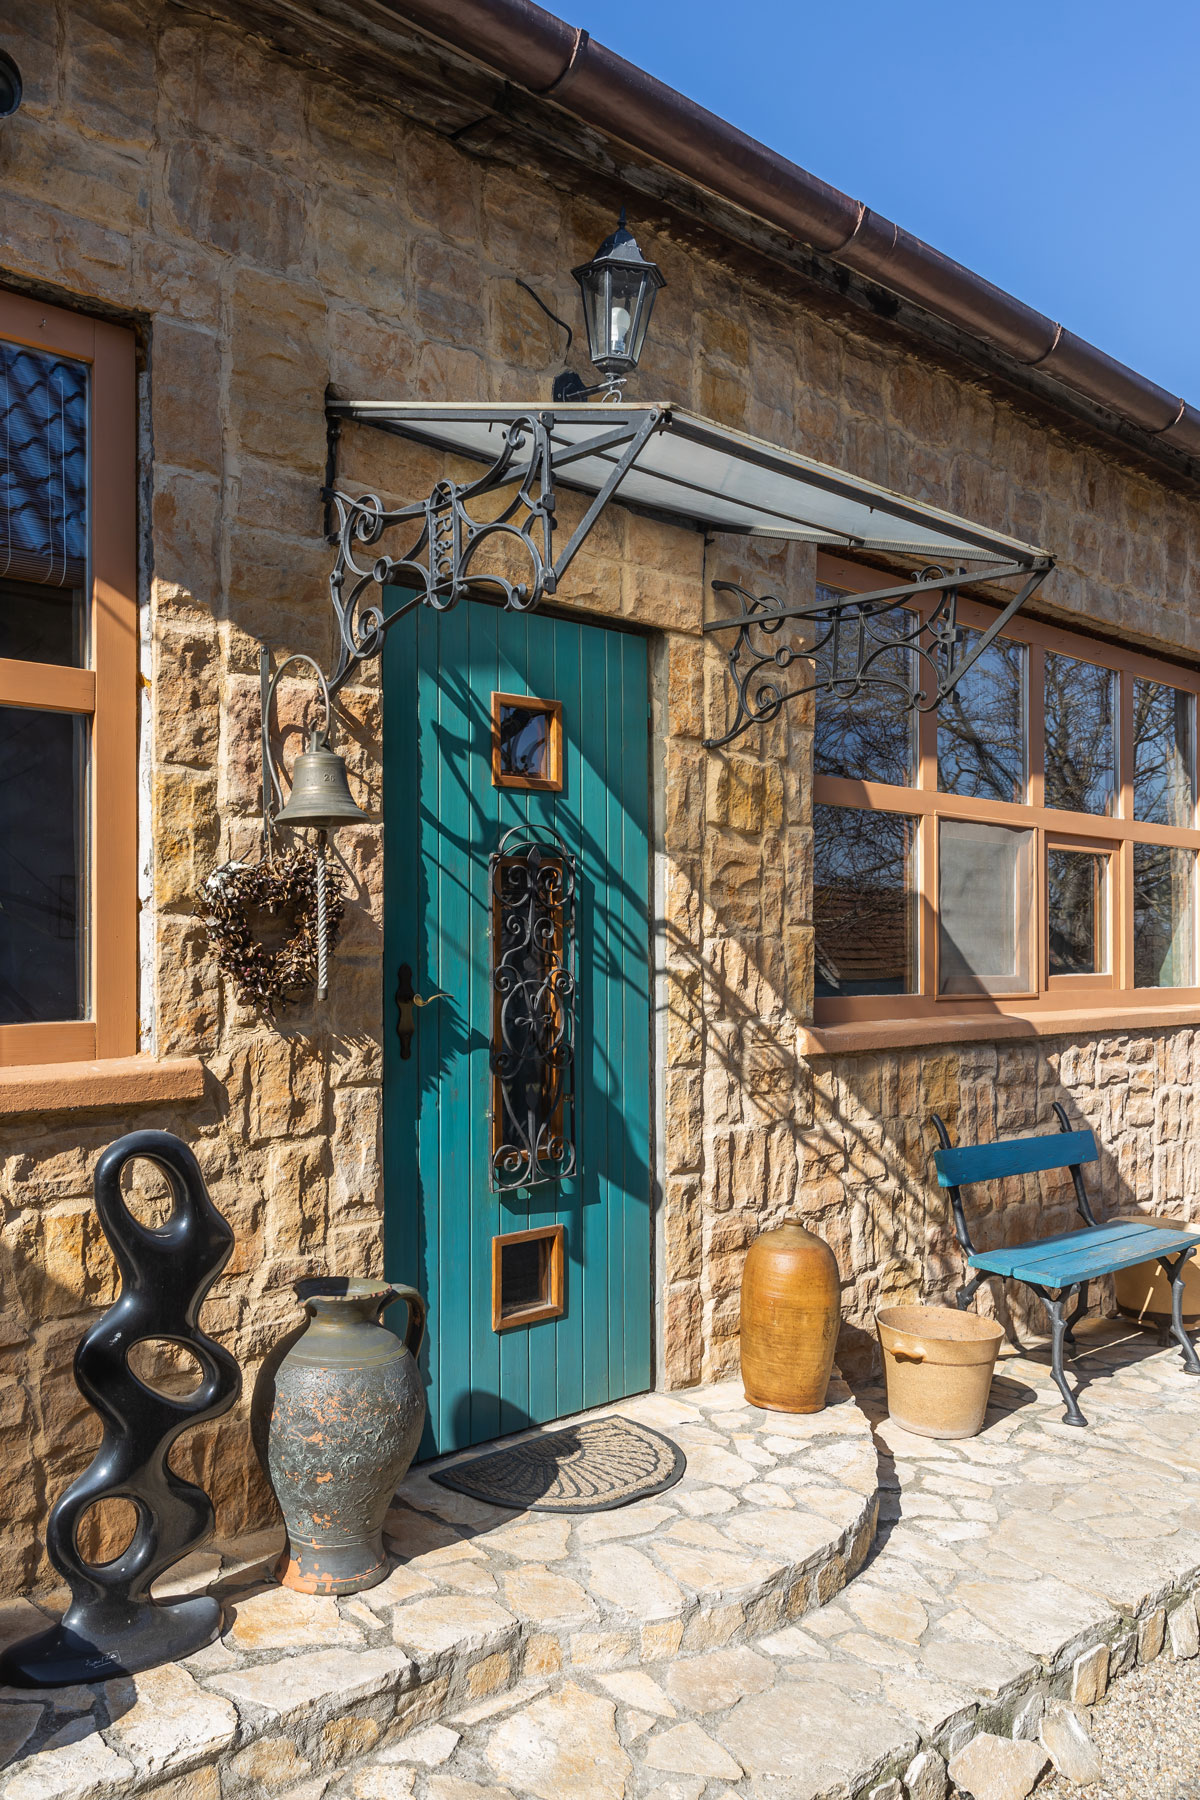 rodinný dom s kamenným obkladom a tyrkysovými vstupnými dverami, exteriér domu je inšpirovaný Balkánom